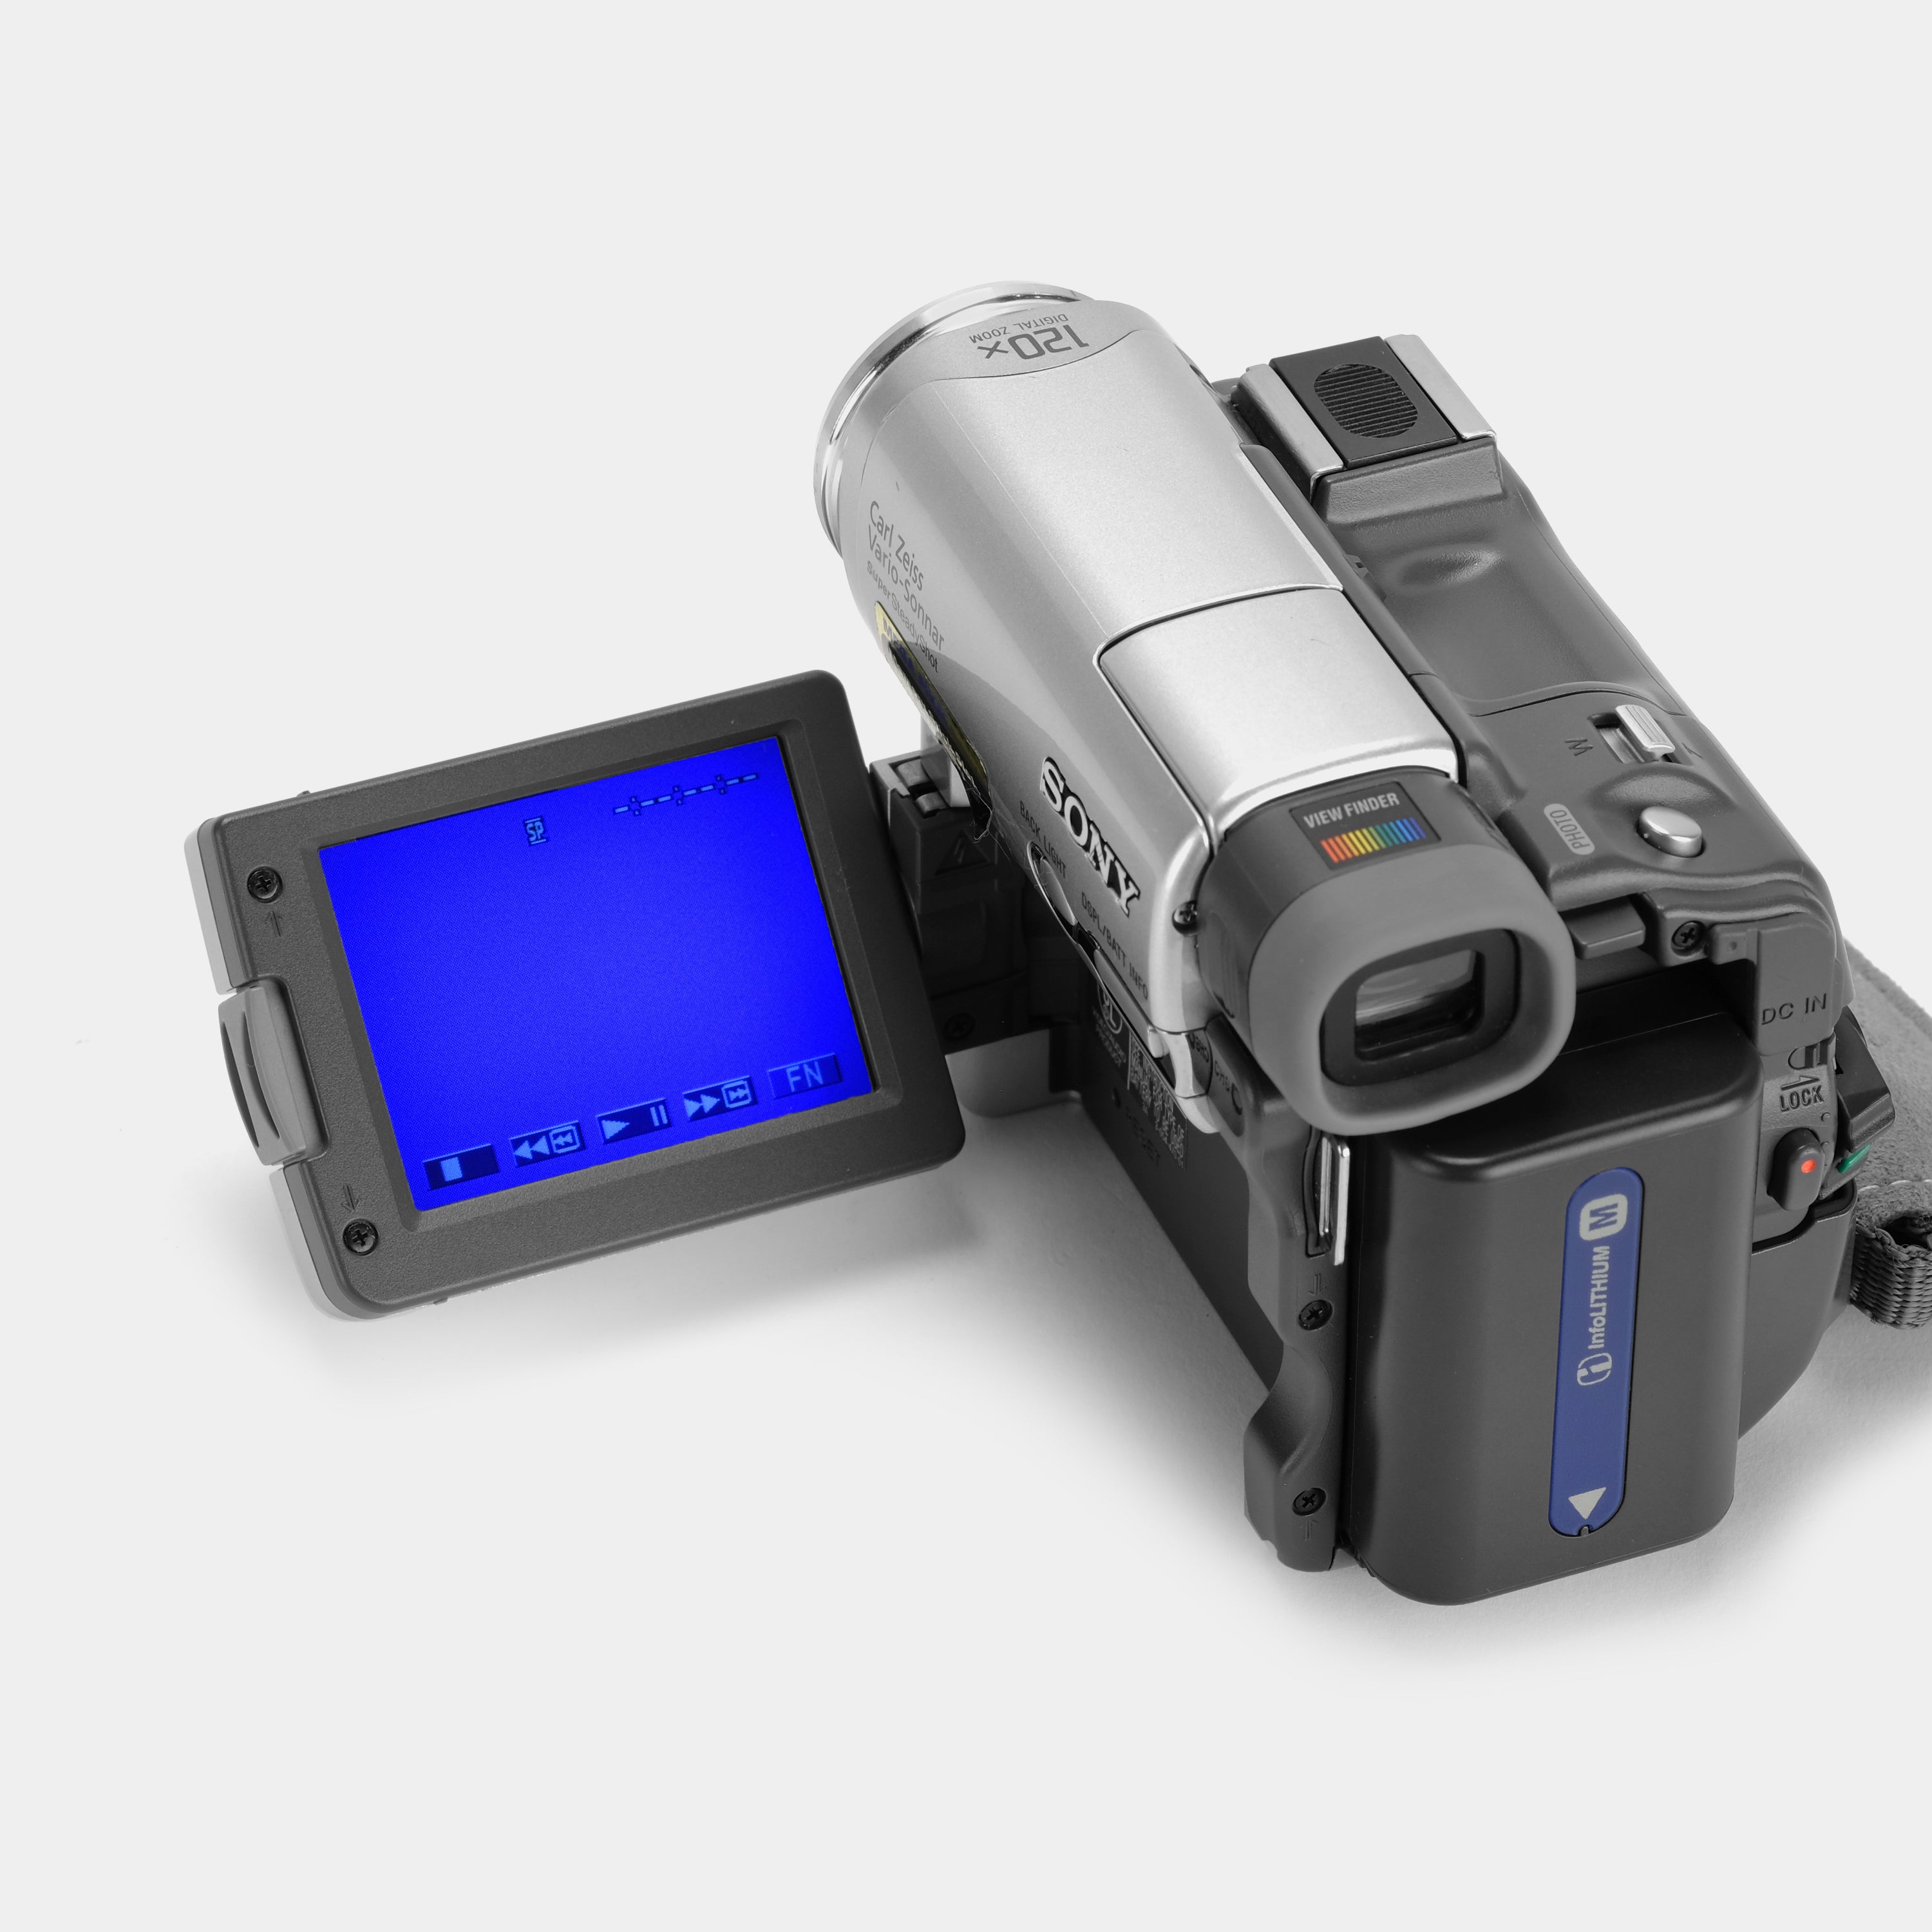 Sony DCR-TRV33 Digital Video Camcorder